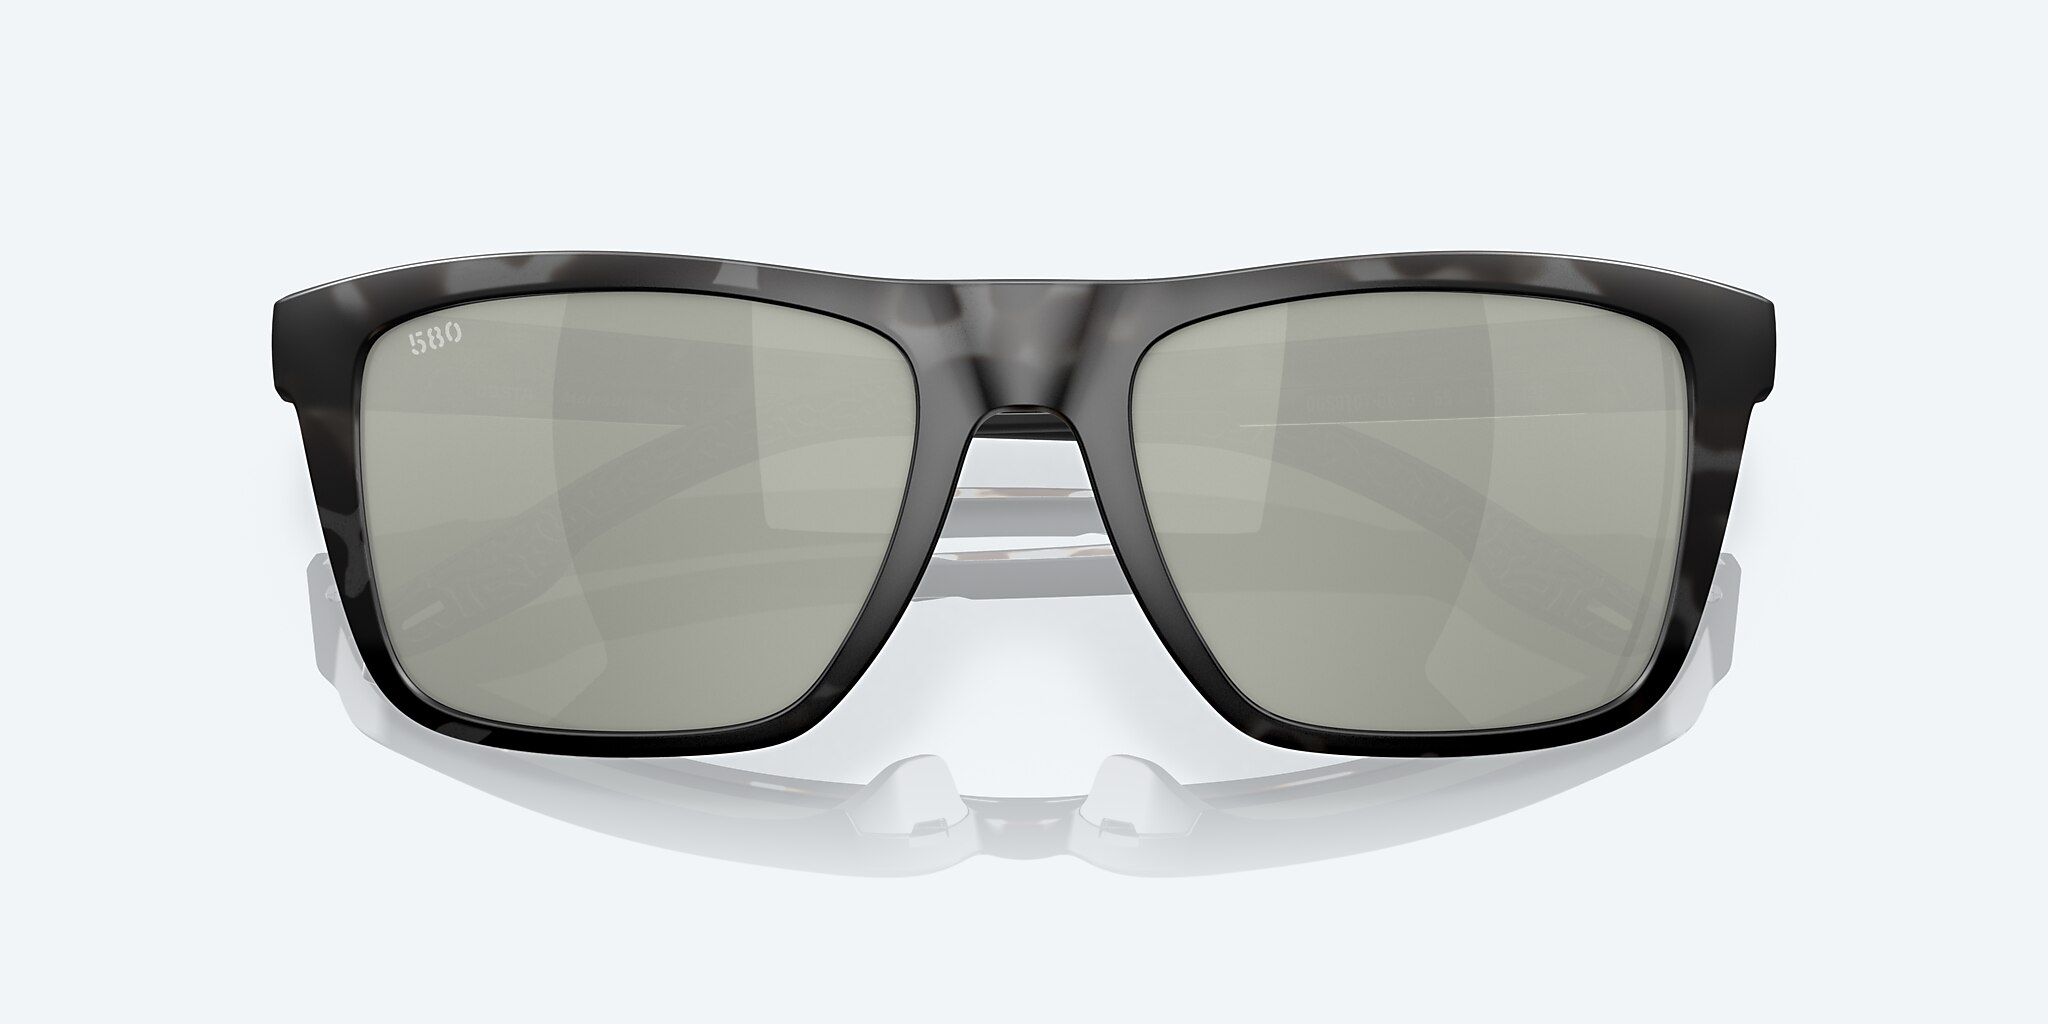 Mainsail Polarized Sunglasses in Gray Silver Mirror